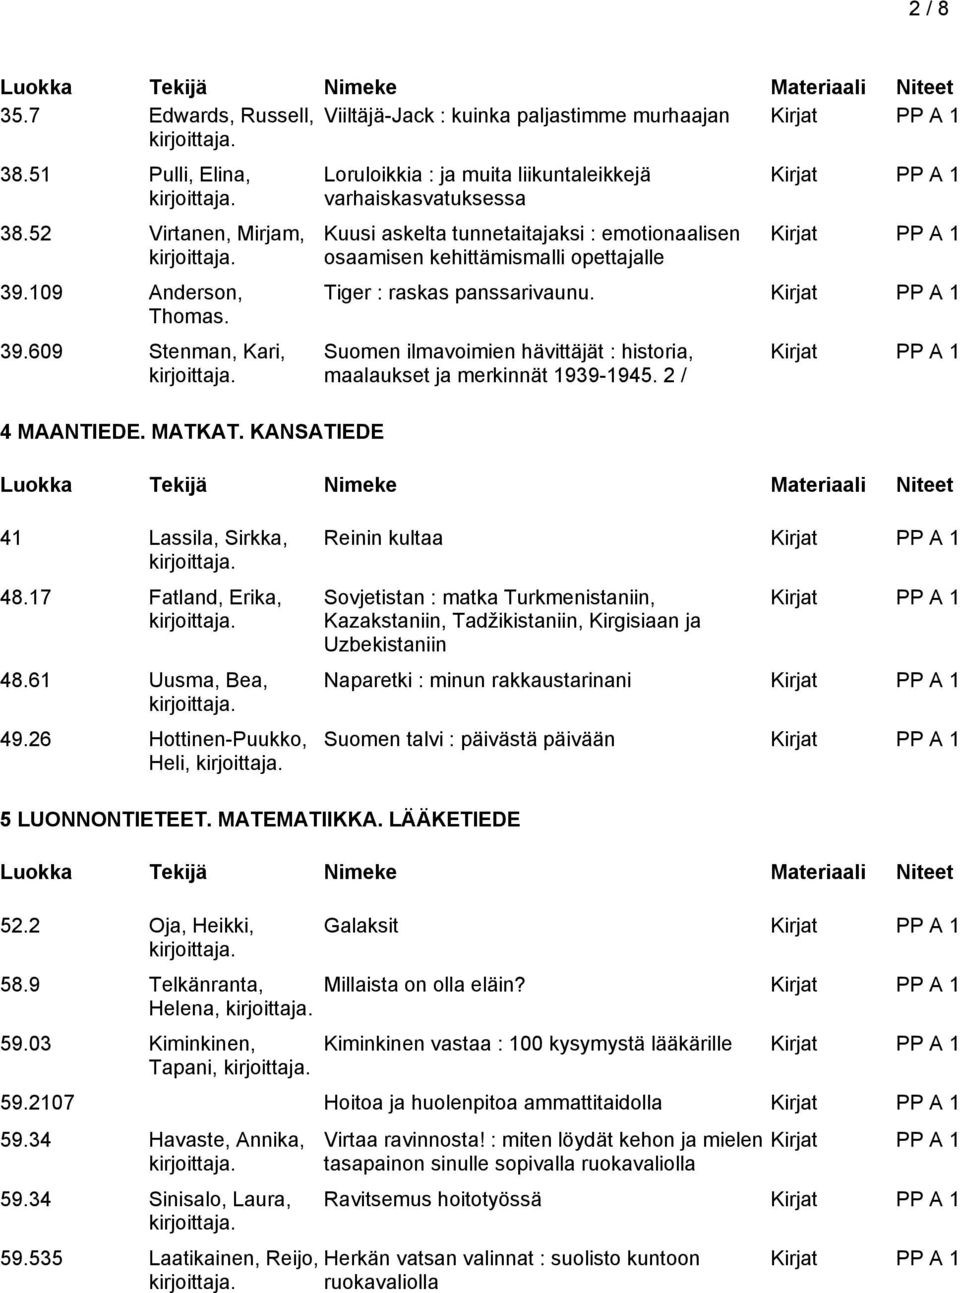 Suomen ilmavoimien hävittäjät : historia, maalaukset ja merkinnät 1939-1945. 2 / 41 Lassila, Sirkka, 48.17 Fatland, Erika, 48.61 Uusma, Bea, 49.